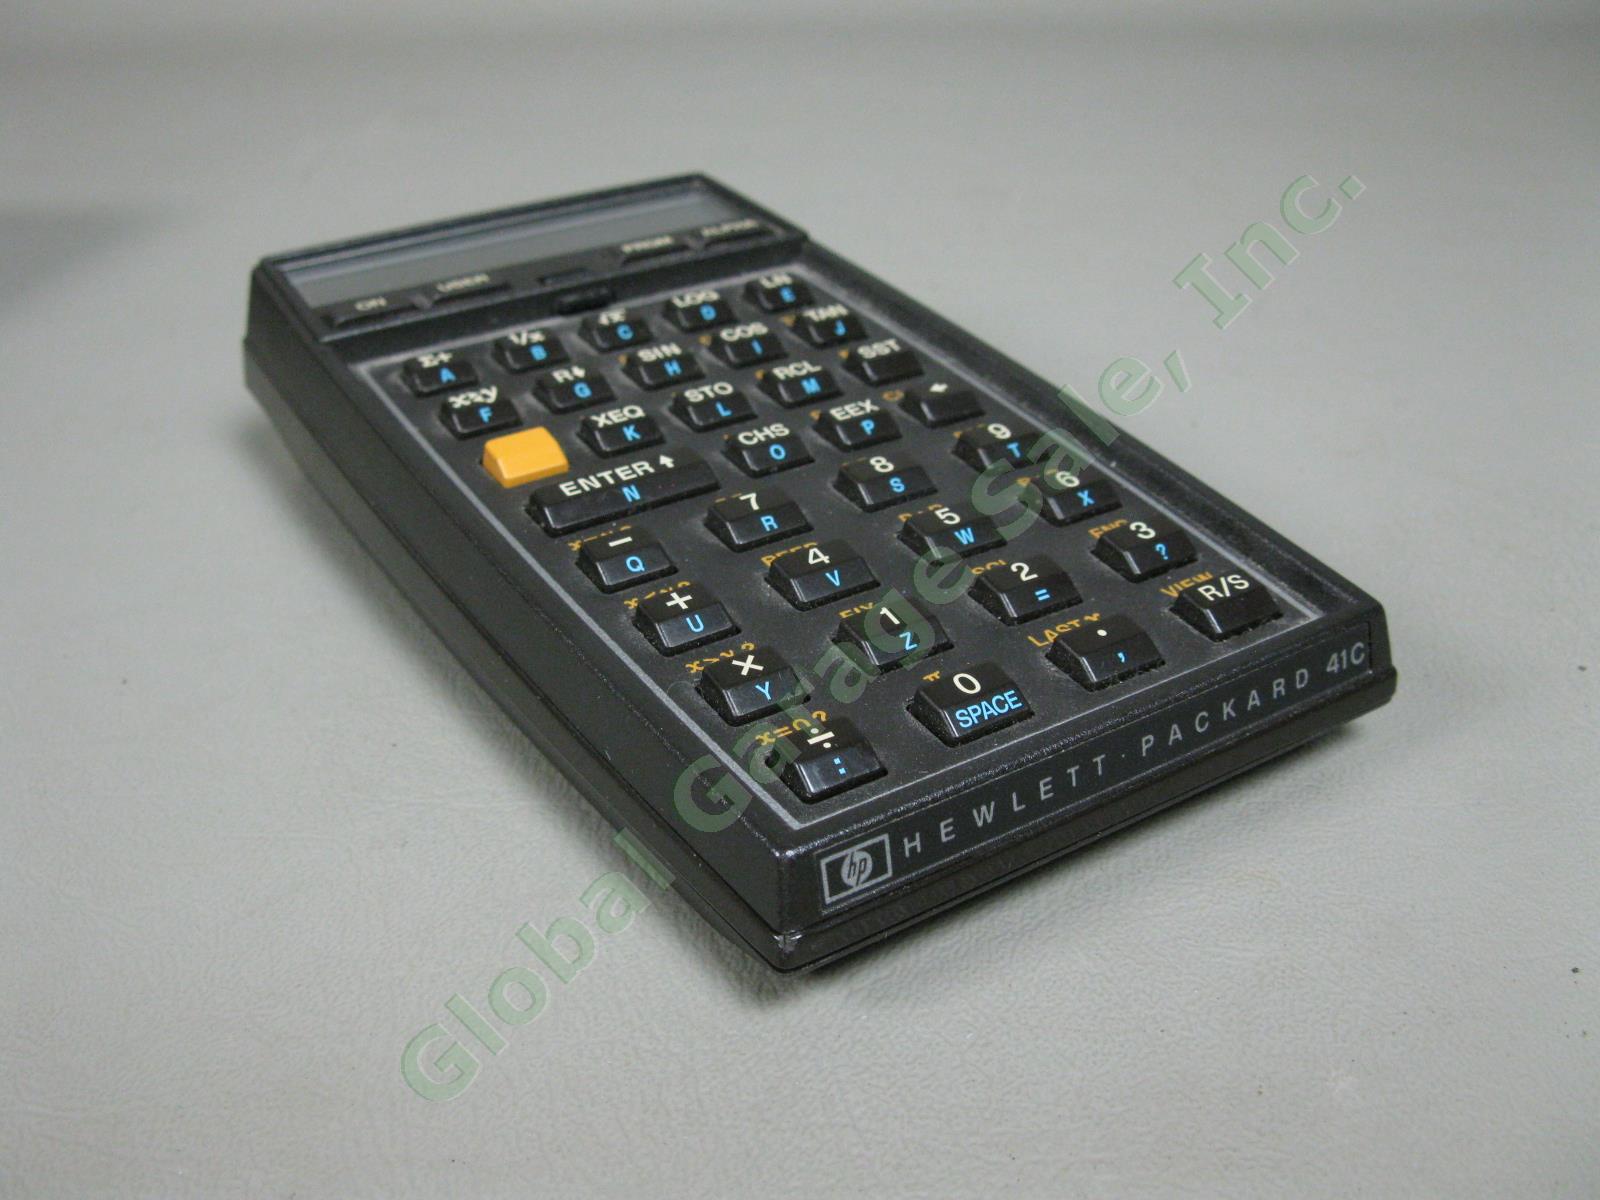 HP-41C Hewlett Packard Scientific System Calculator Exc Cond w/ Original Case NR 3